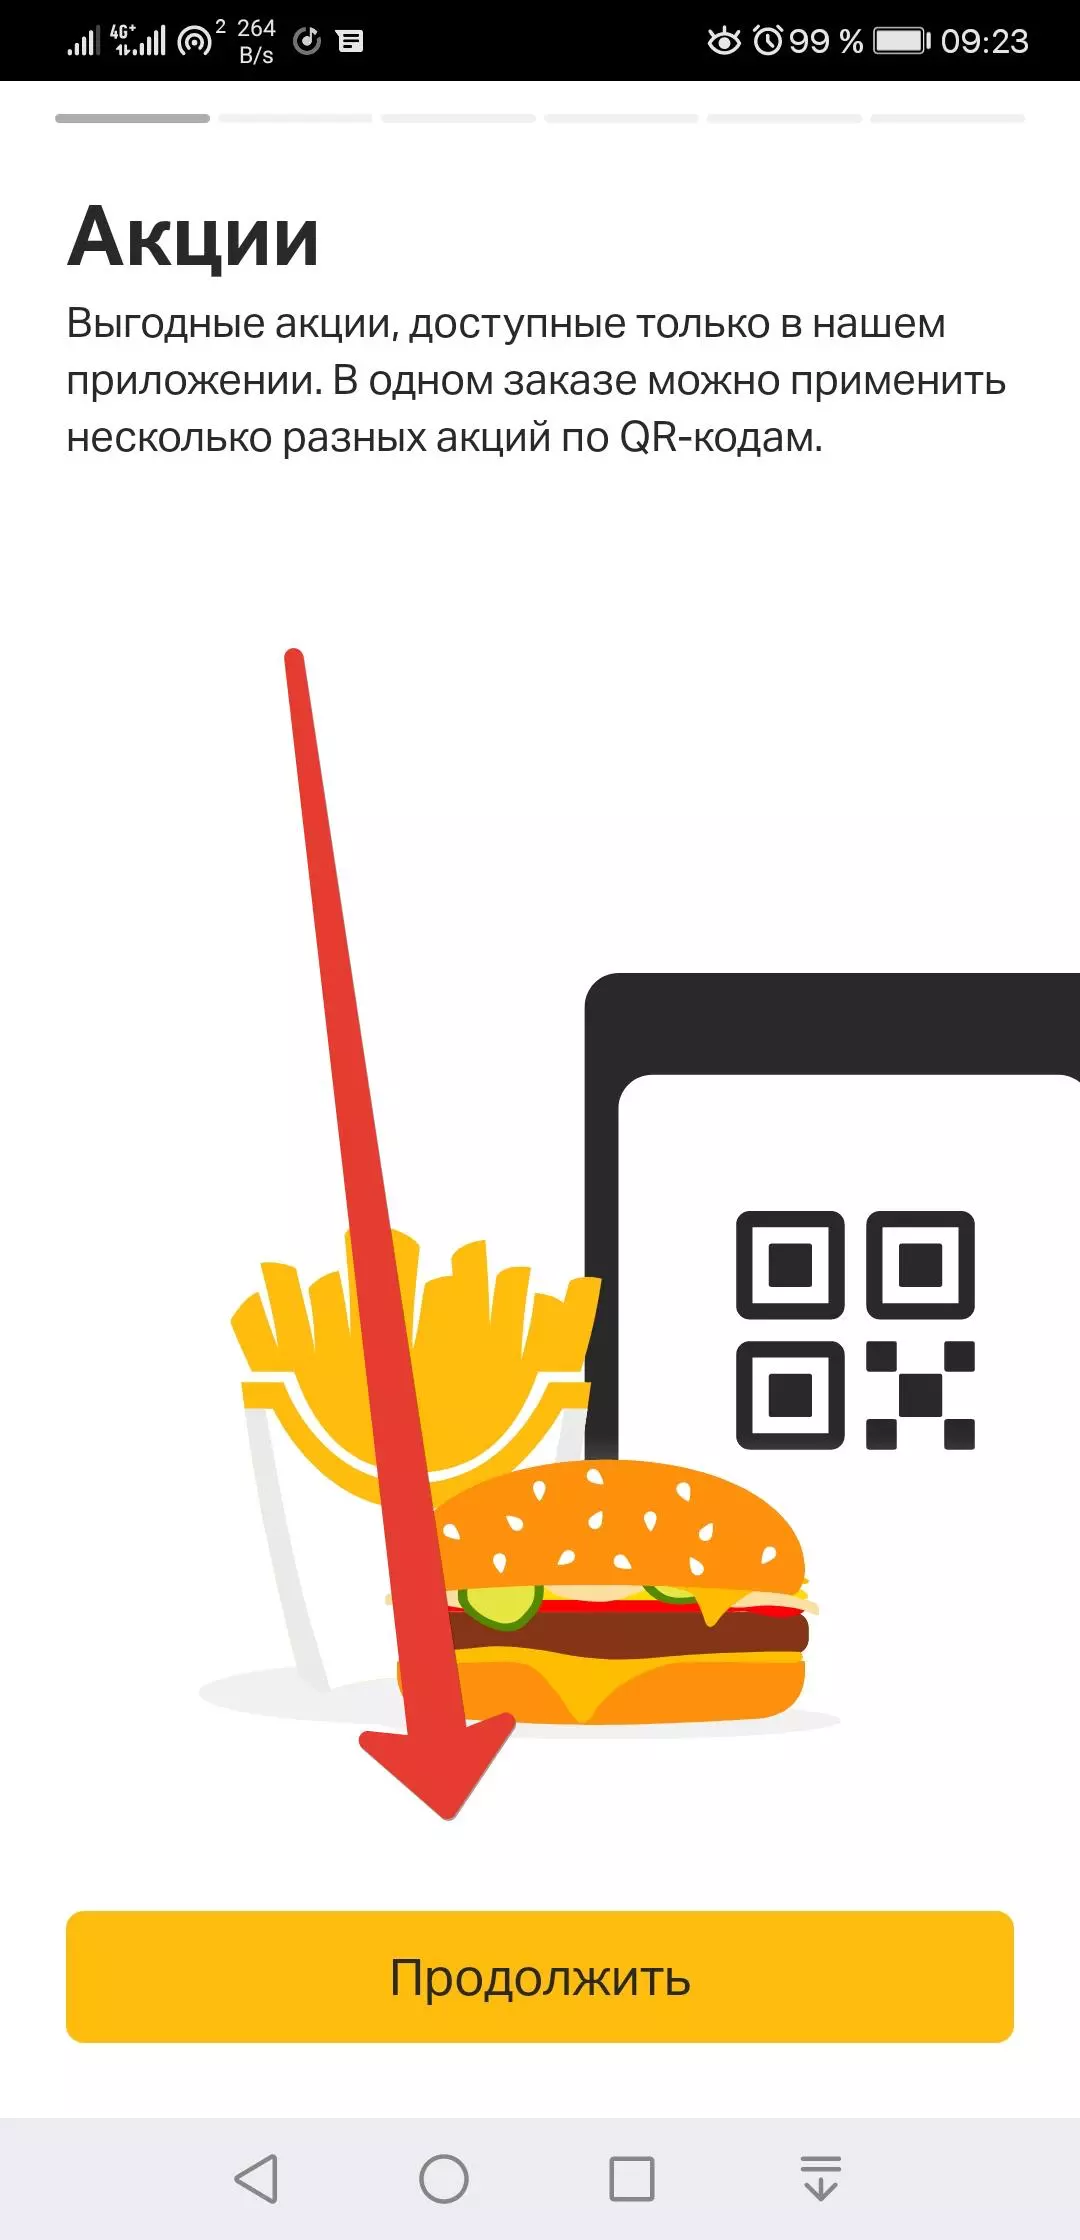 Приветственный экран приложения "Мой бургер"